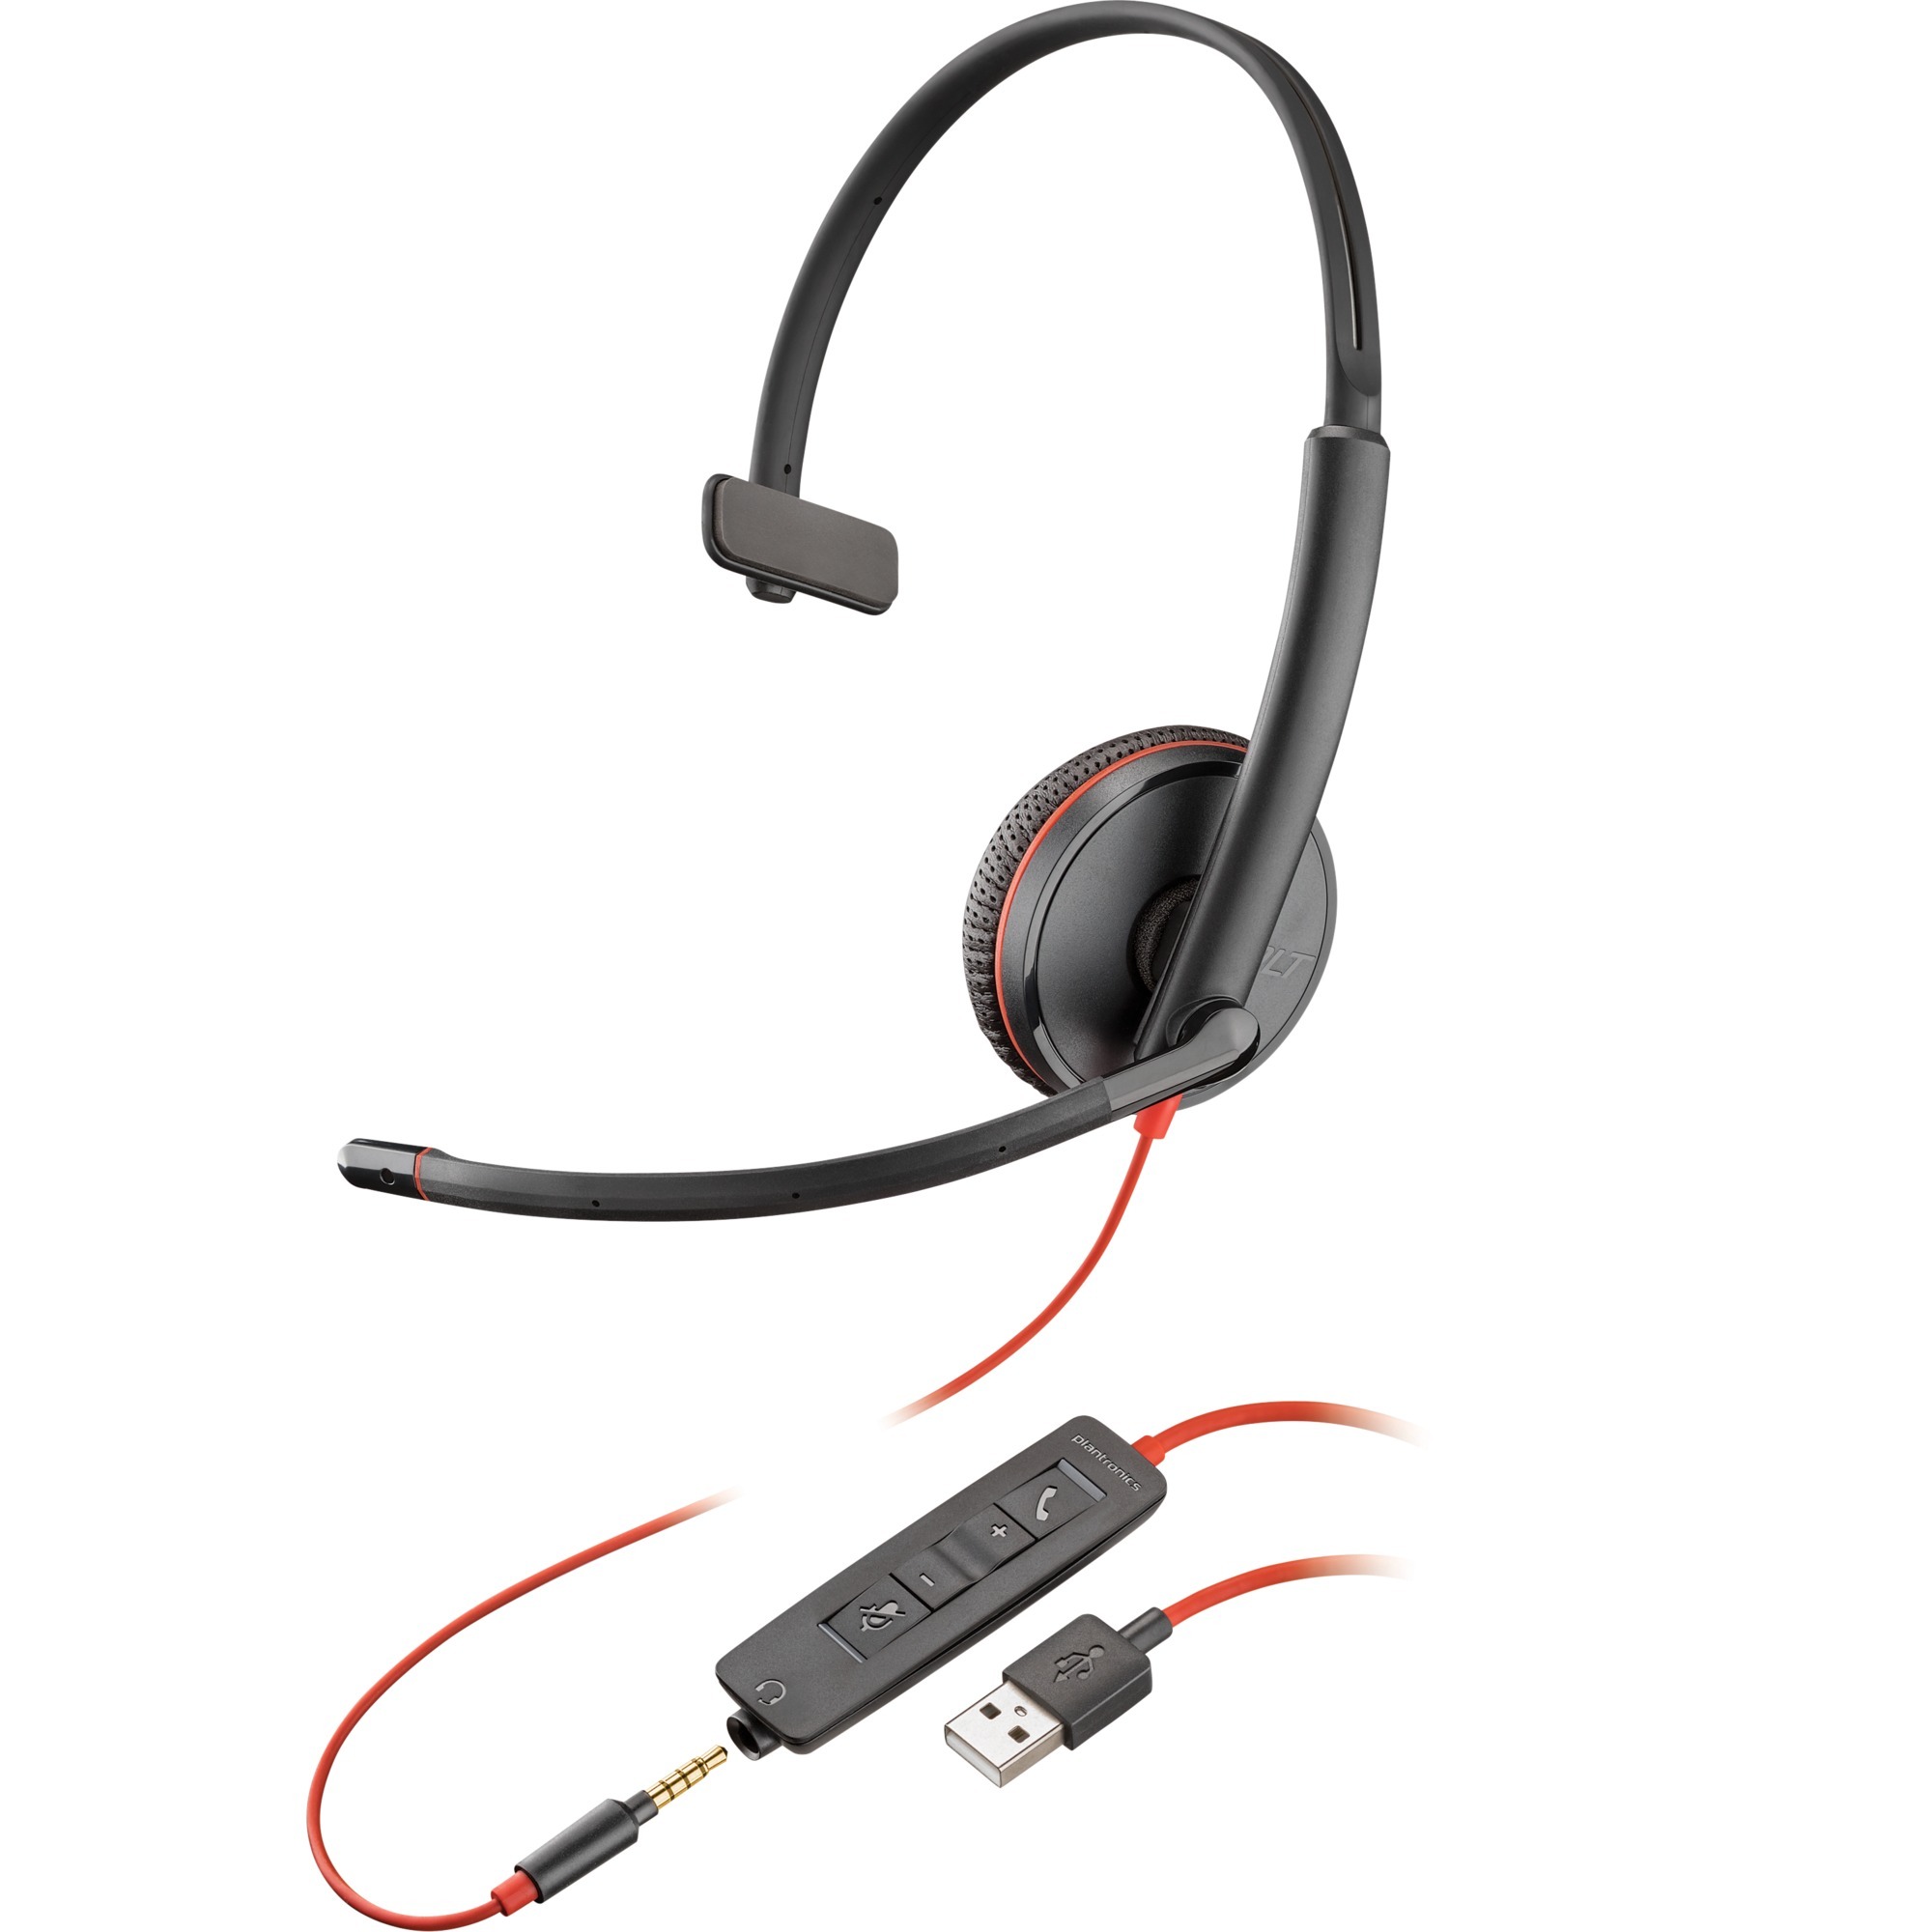 Image of Alternate - Blackwire 3215, Headset online einkaufen bei Alternate